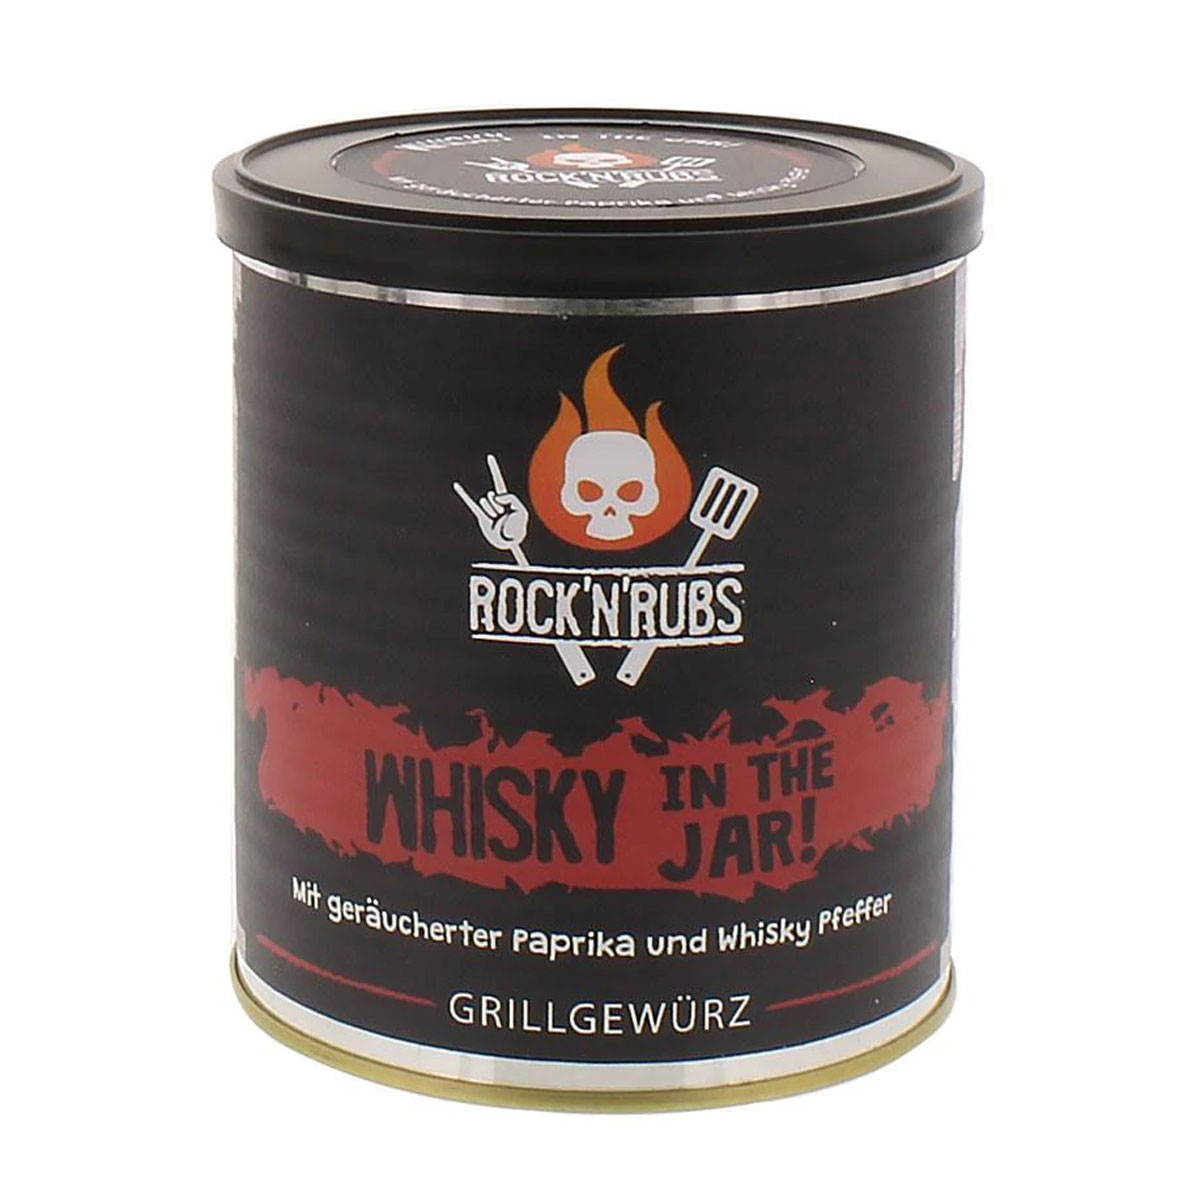 Rock'n'Rubs "Whisky in the Jar" Frontline Rub, 140g